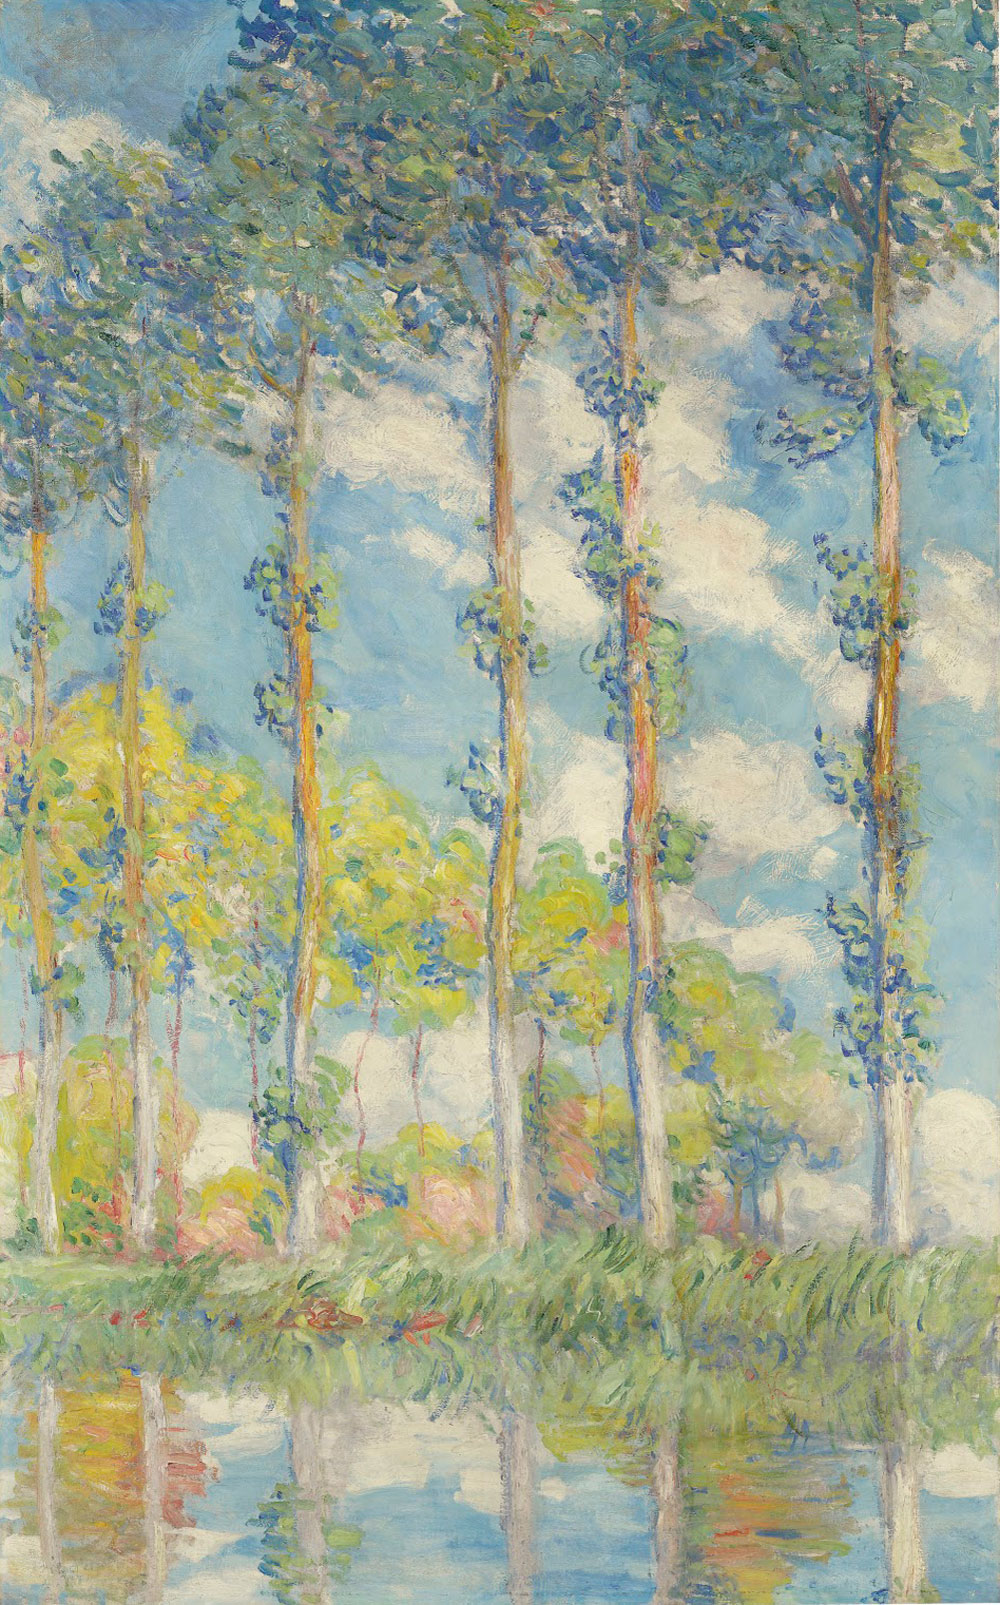 Les Peupliers by Claude Monet